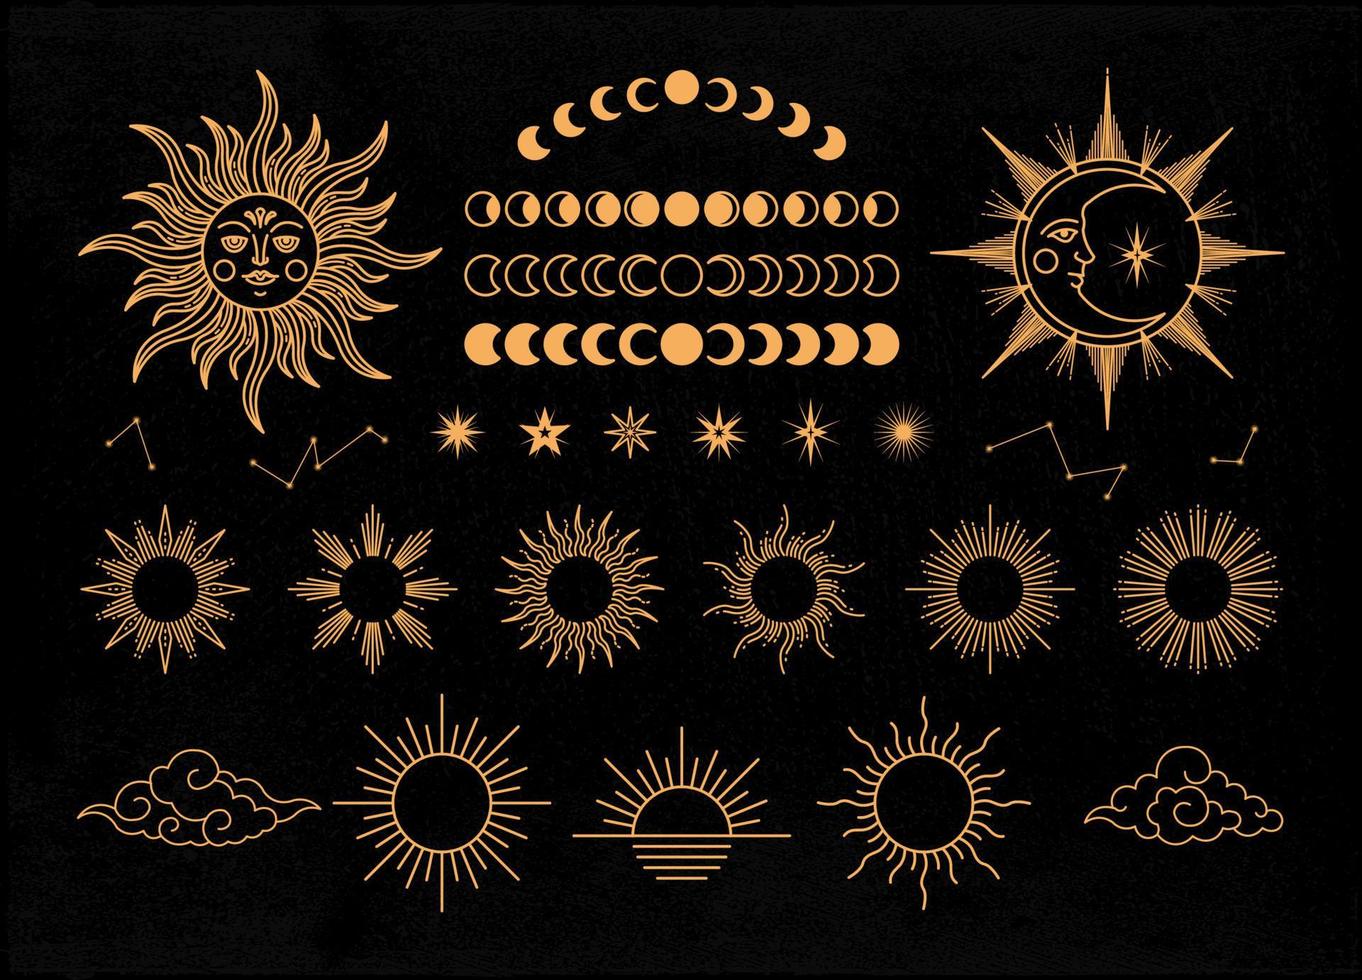 Sun, moon and star mystical or celestial illustration vector